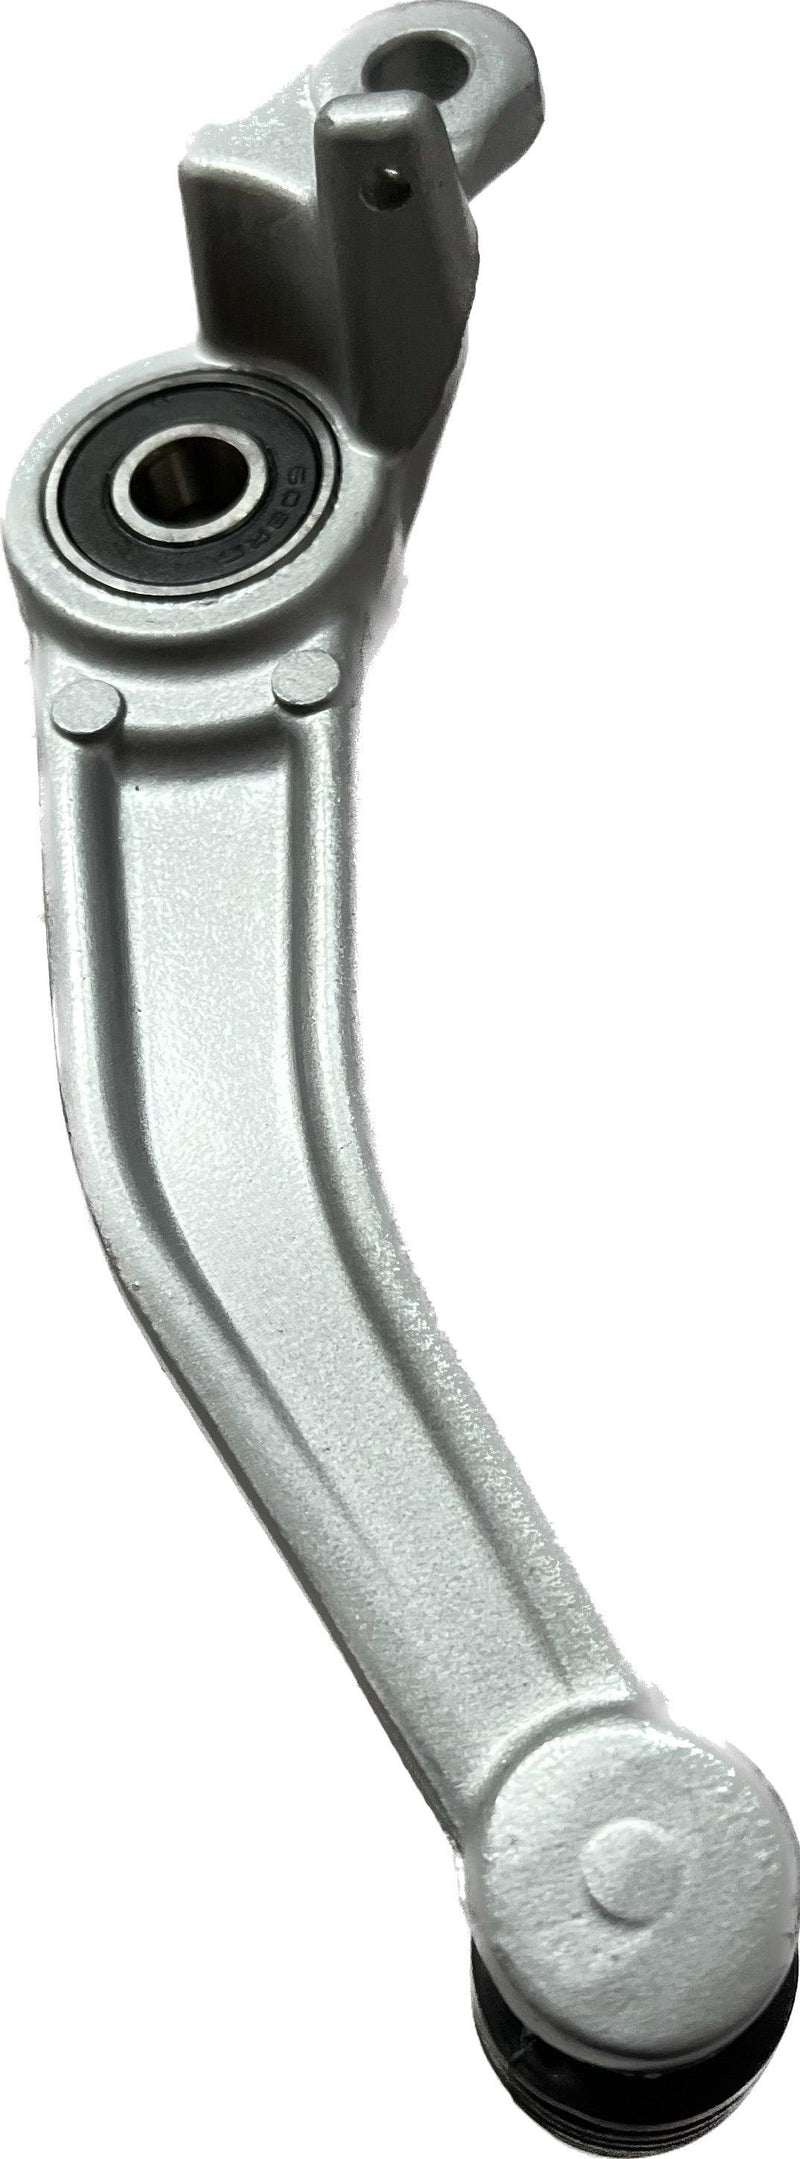 Brake Pedal Silver for KTM Duke 125 | 200 | 250 | 390 - SPARIFY